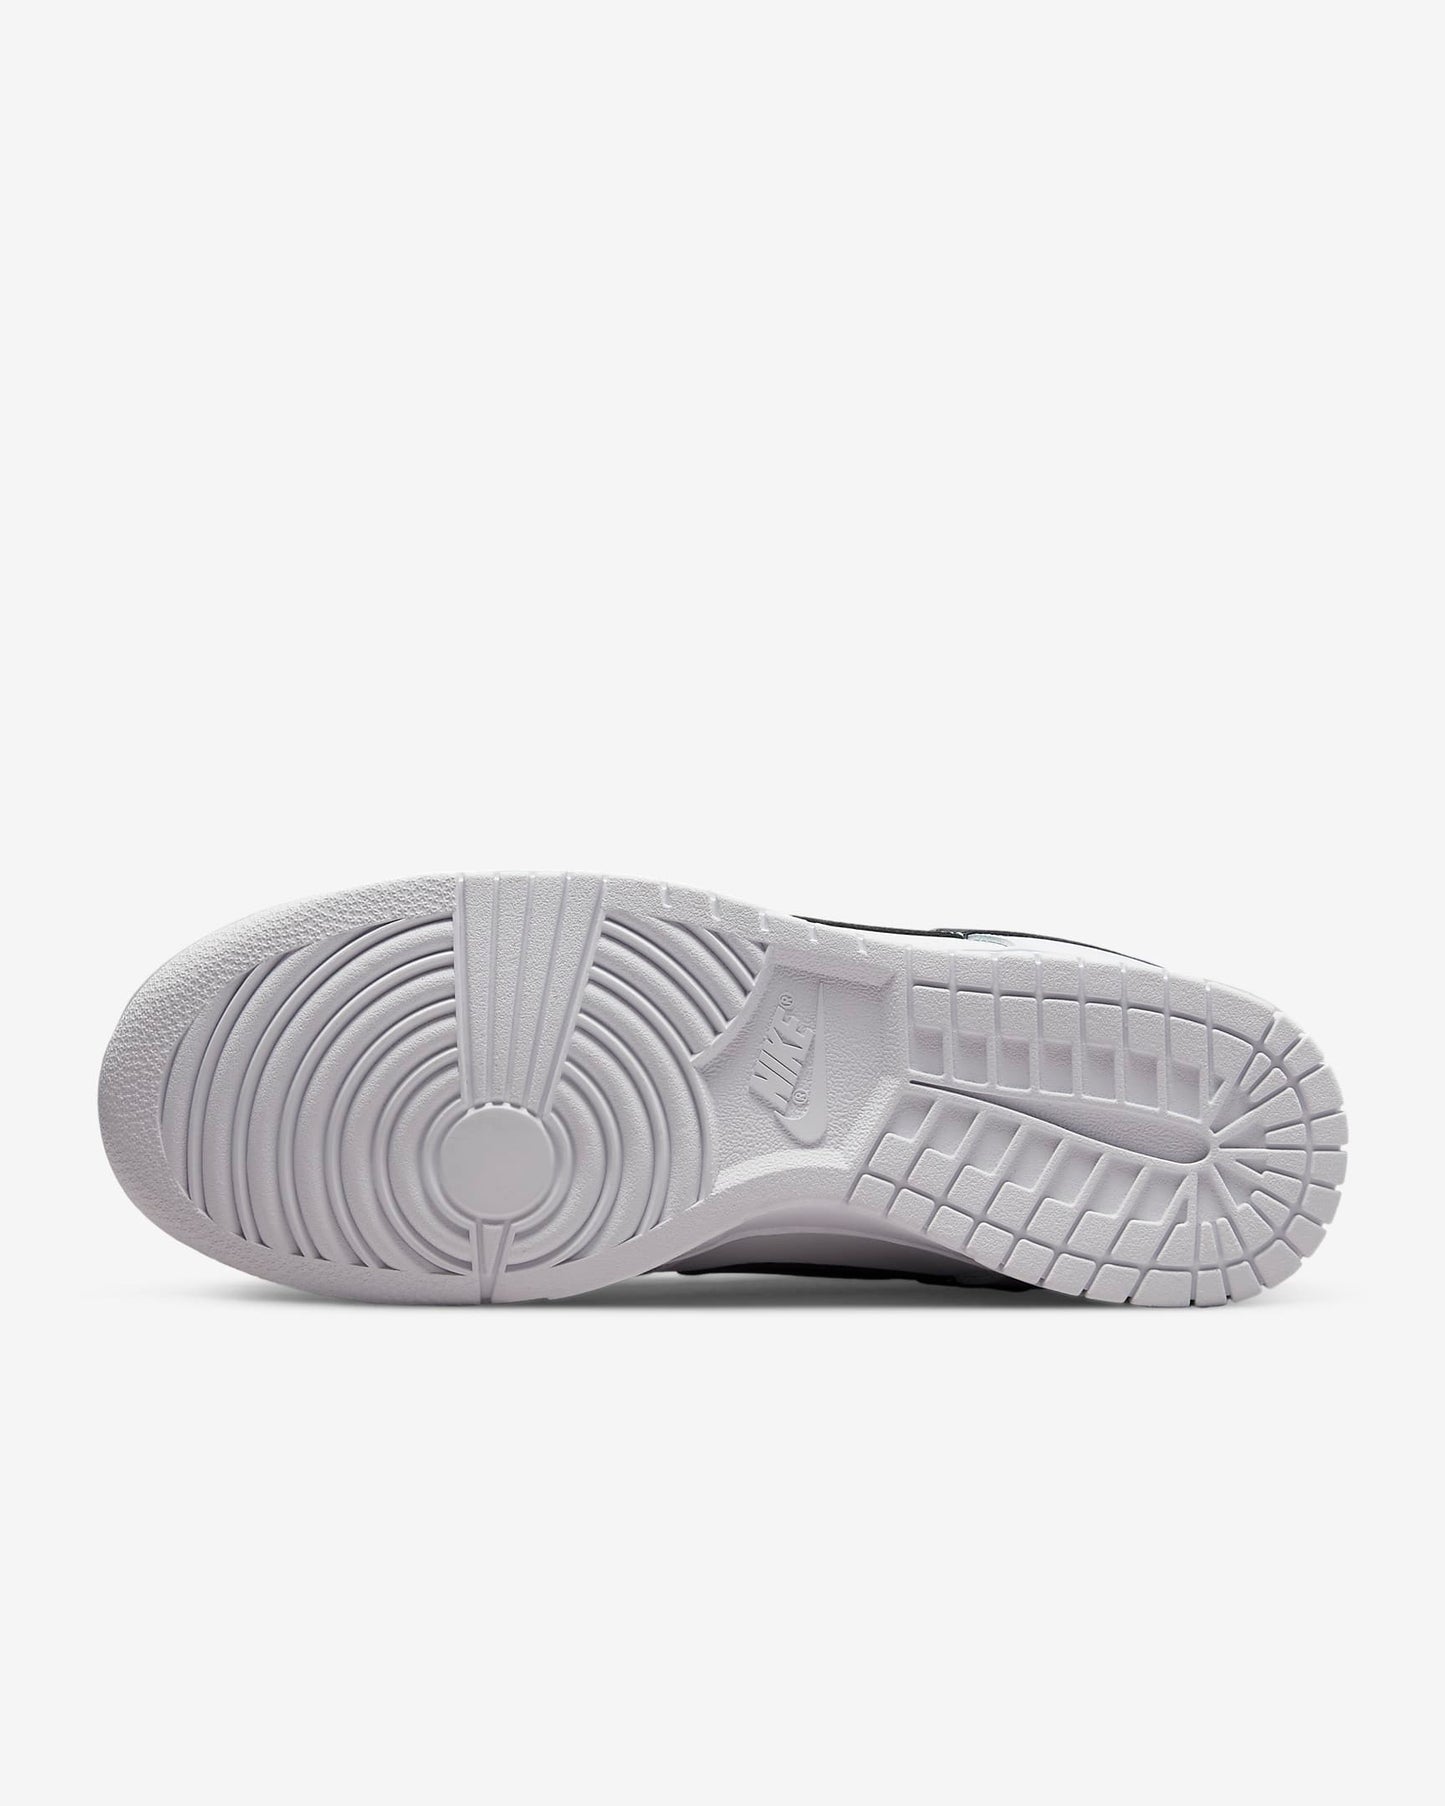 Nike Dunk Low Retro Men's Shoes, White/Summit White/Black